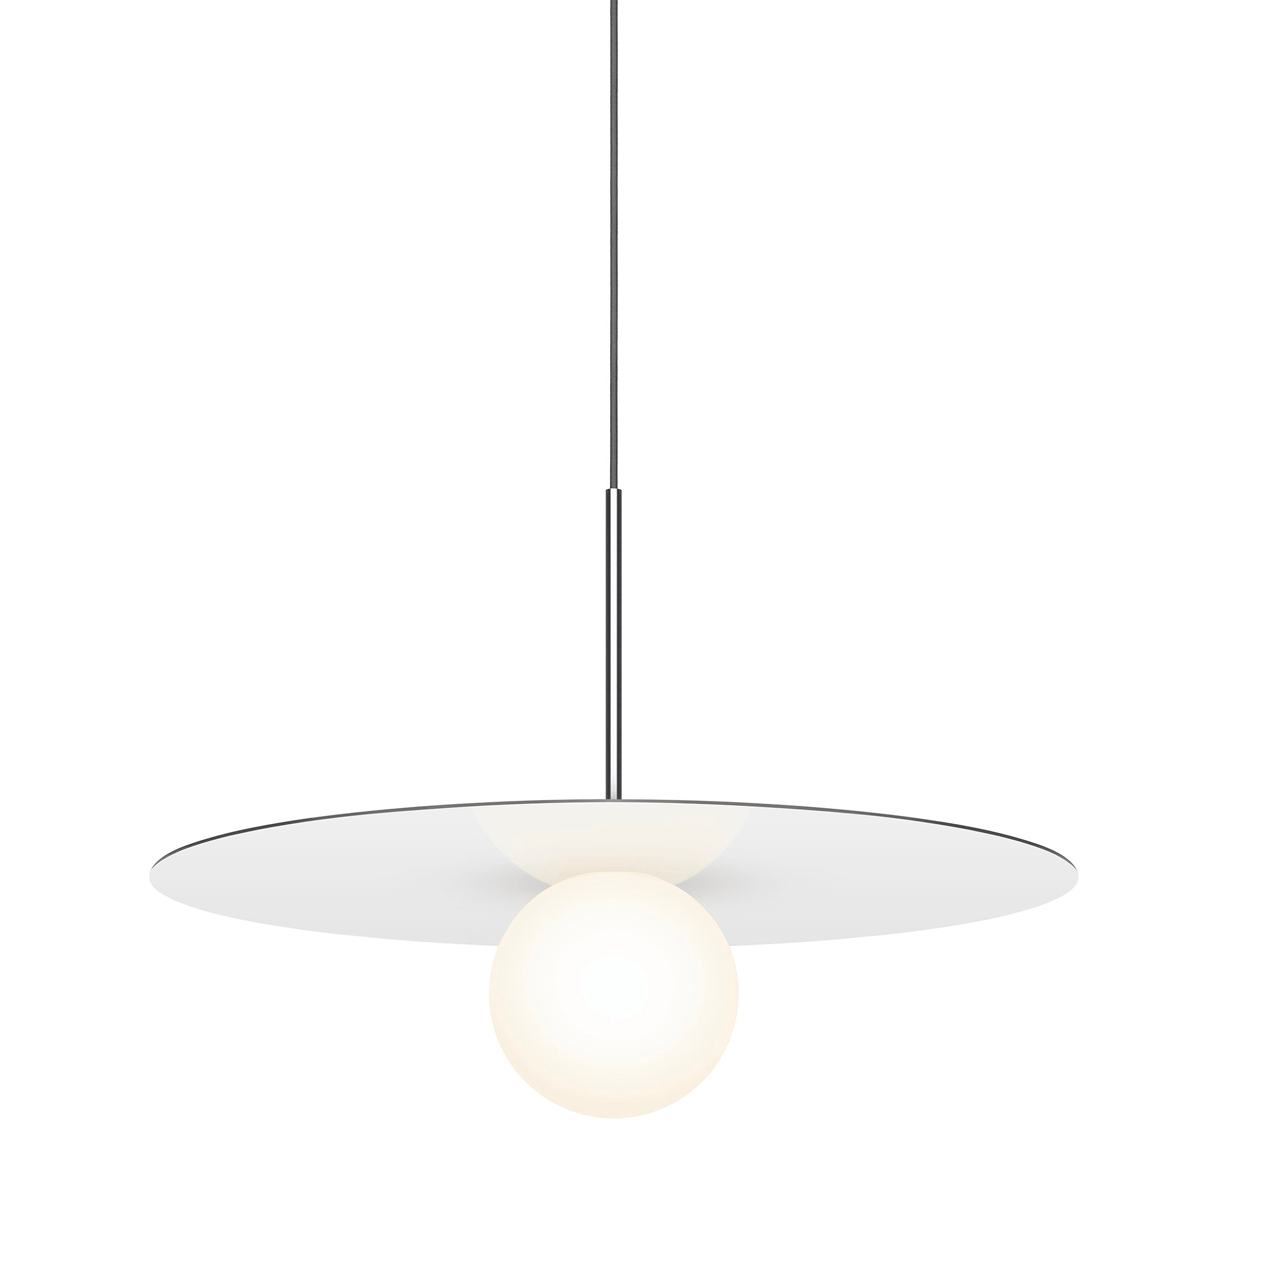 Pablo Designs Bola Disc, lampe suspendue LED avec un globe en verre et un abat-jour en forme de disque, en aluminium, blanc, 22ʼʼ